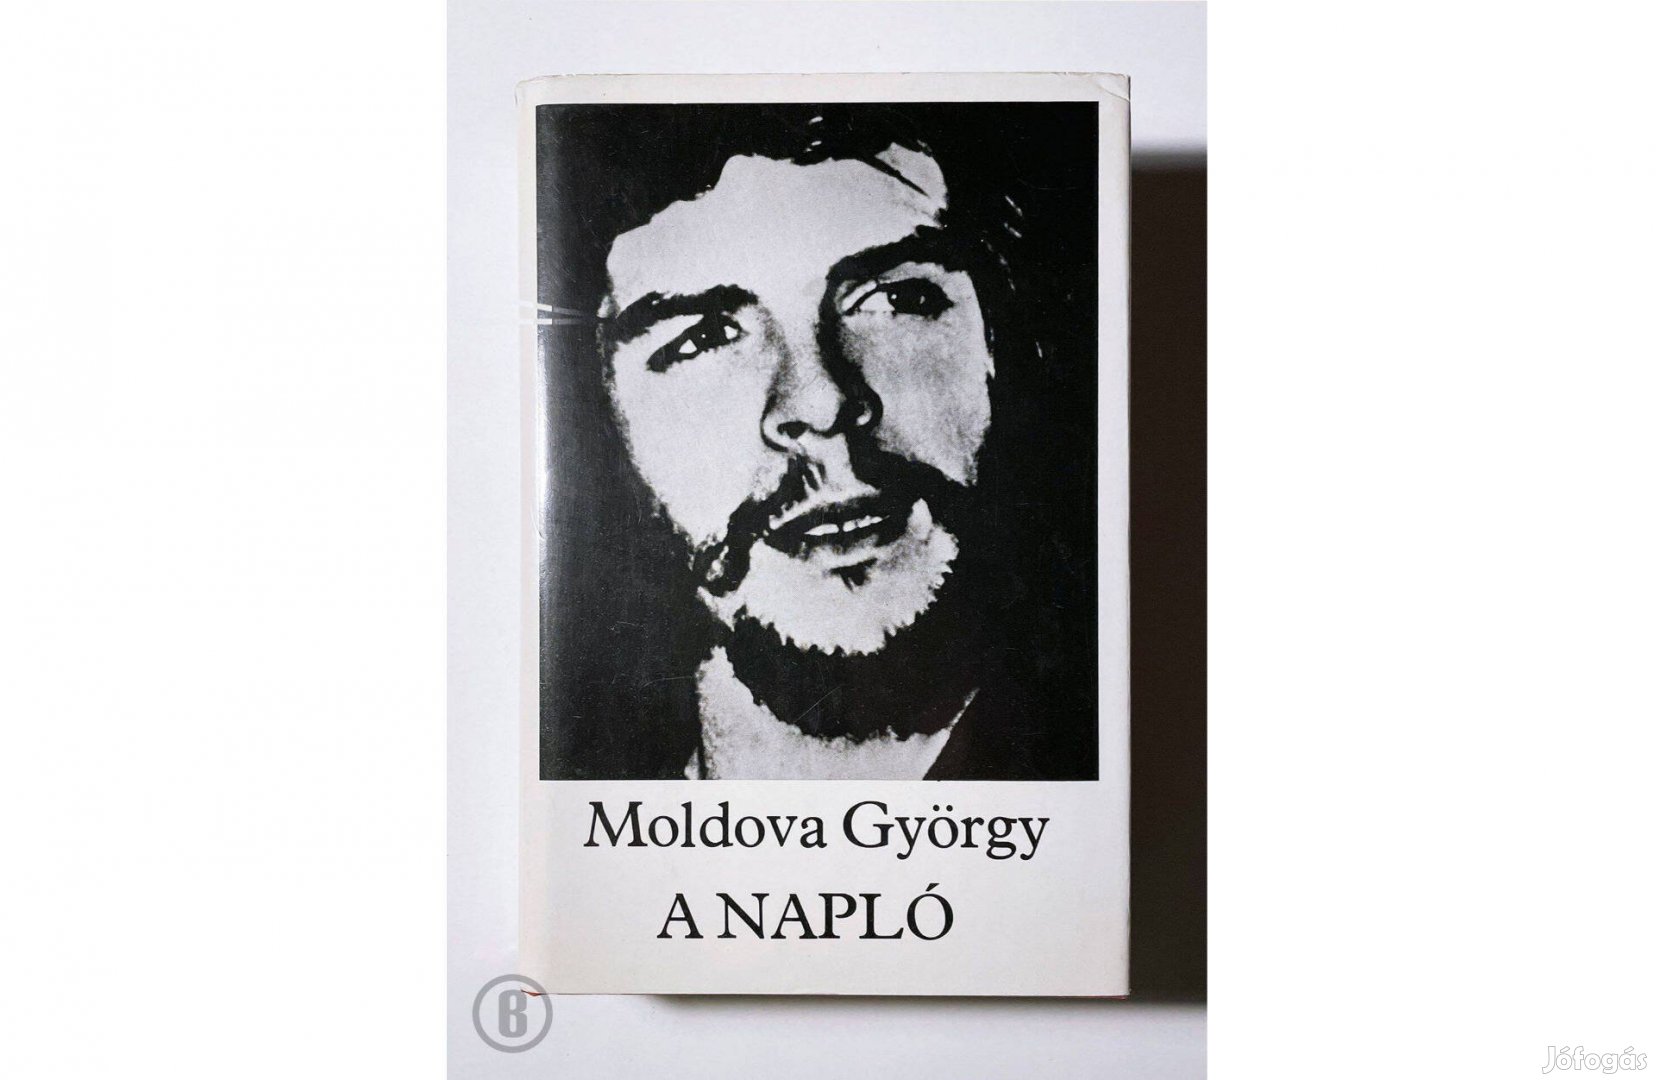 Moldova György: A napló